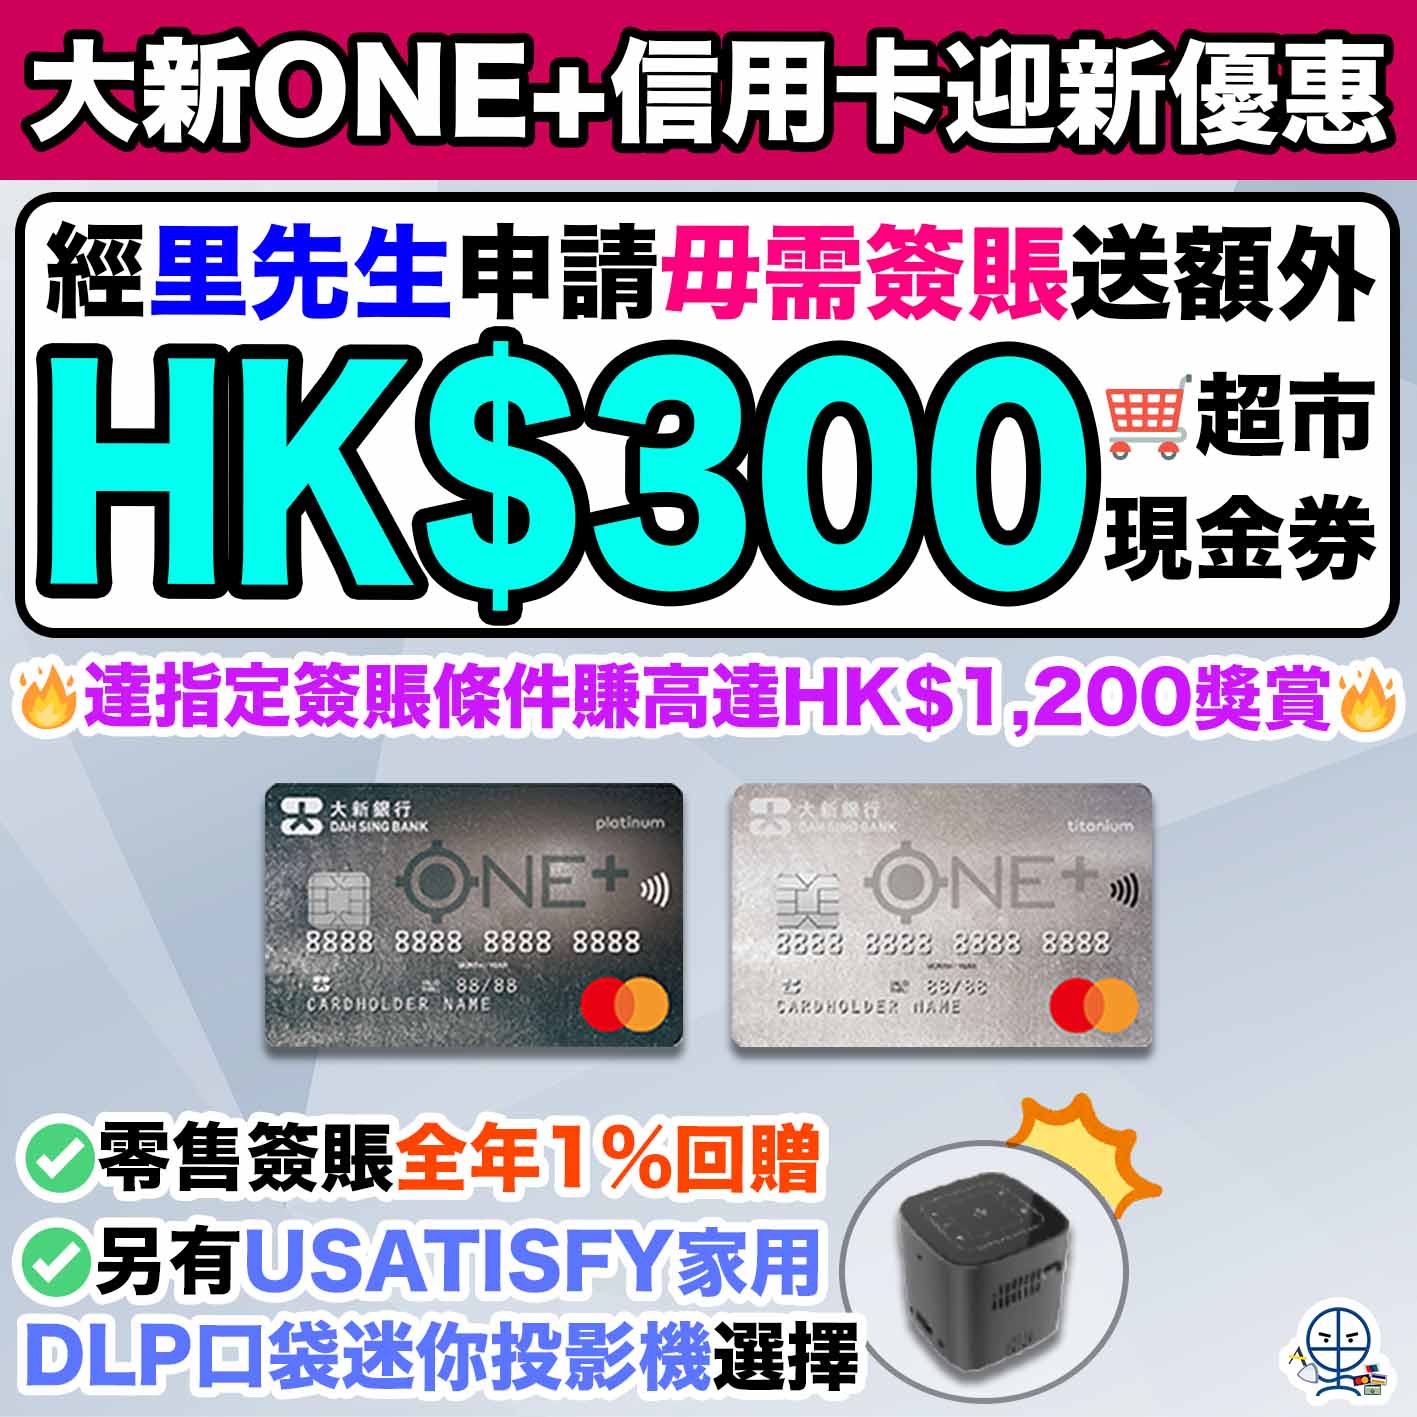 【大新ONE+信用卡】毋需簽賬里先生送HK$300 Apple禮品卡/超市禮券！達指定簽賬條件賺高達HK$1,200獎賞！零售簽賬全年1%回贈！另有USATISFY家用DLP口袋迷你投影機選擇！